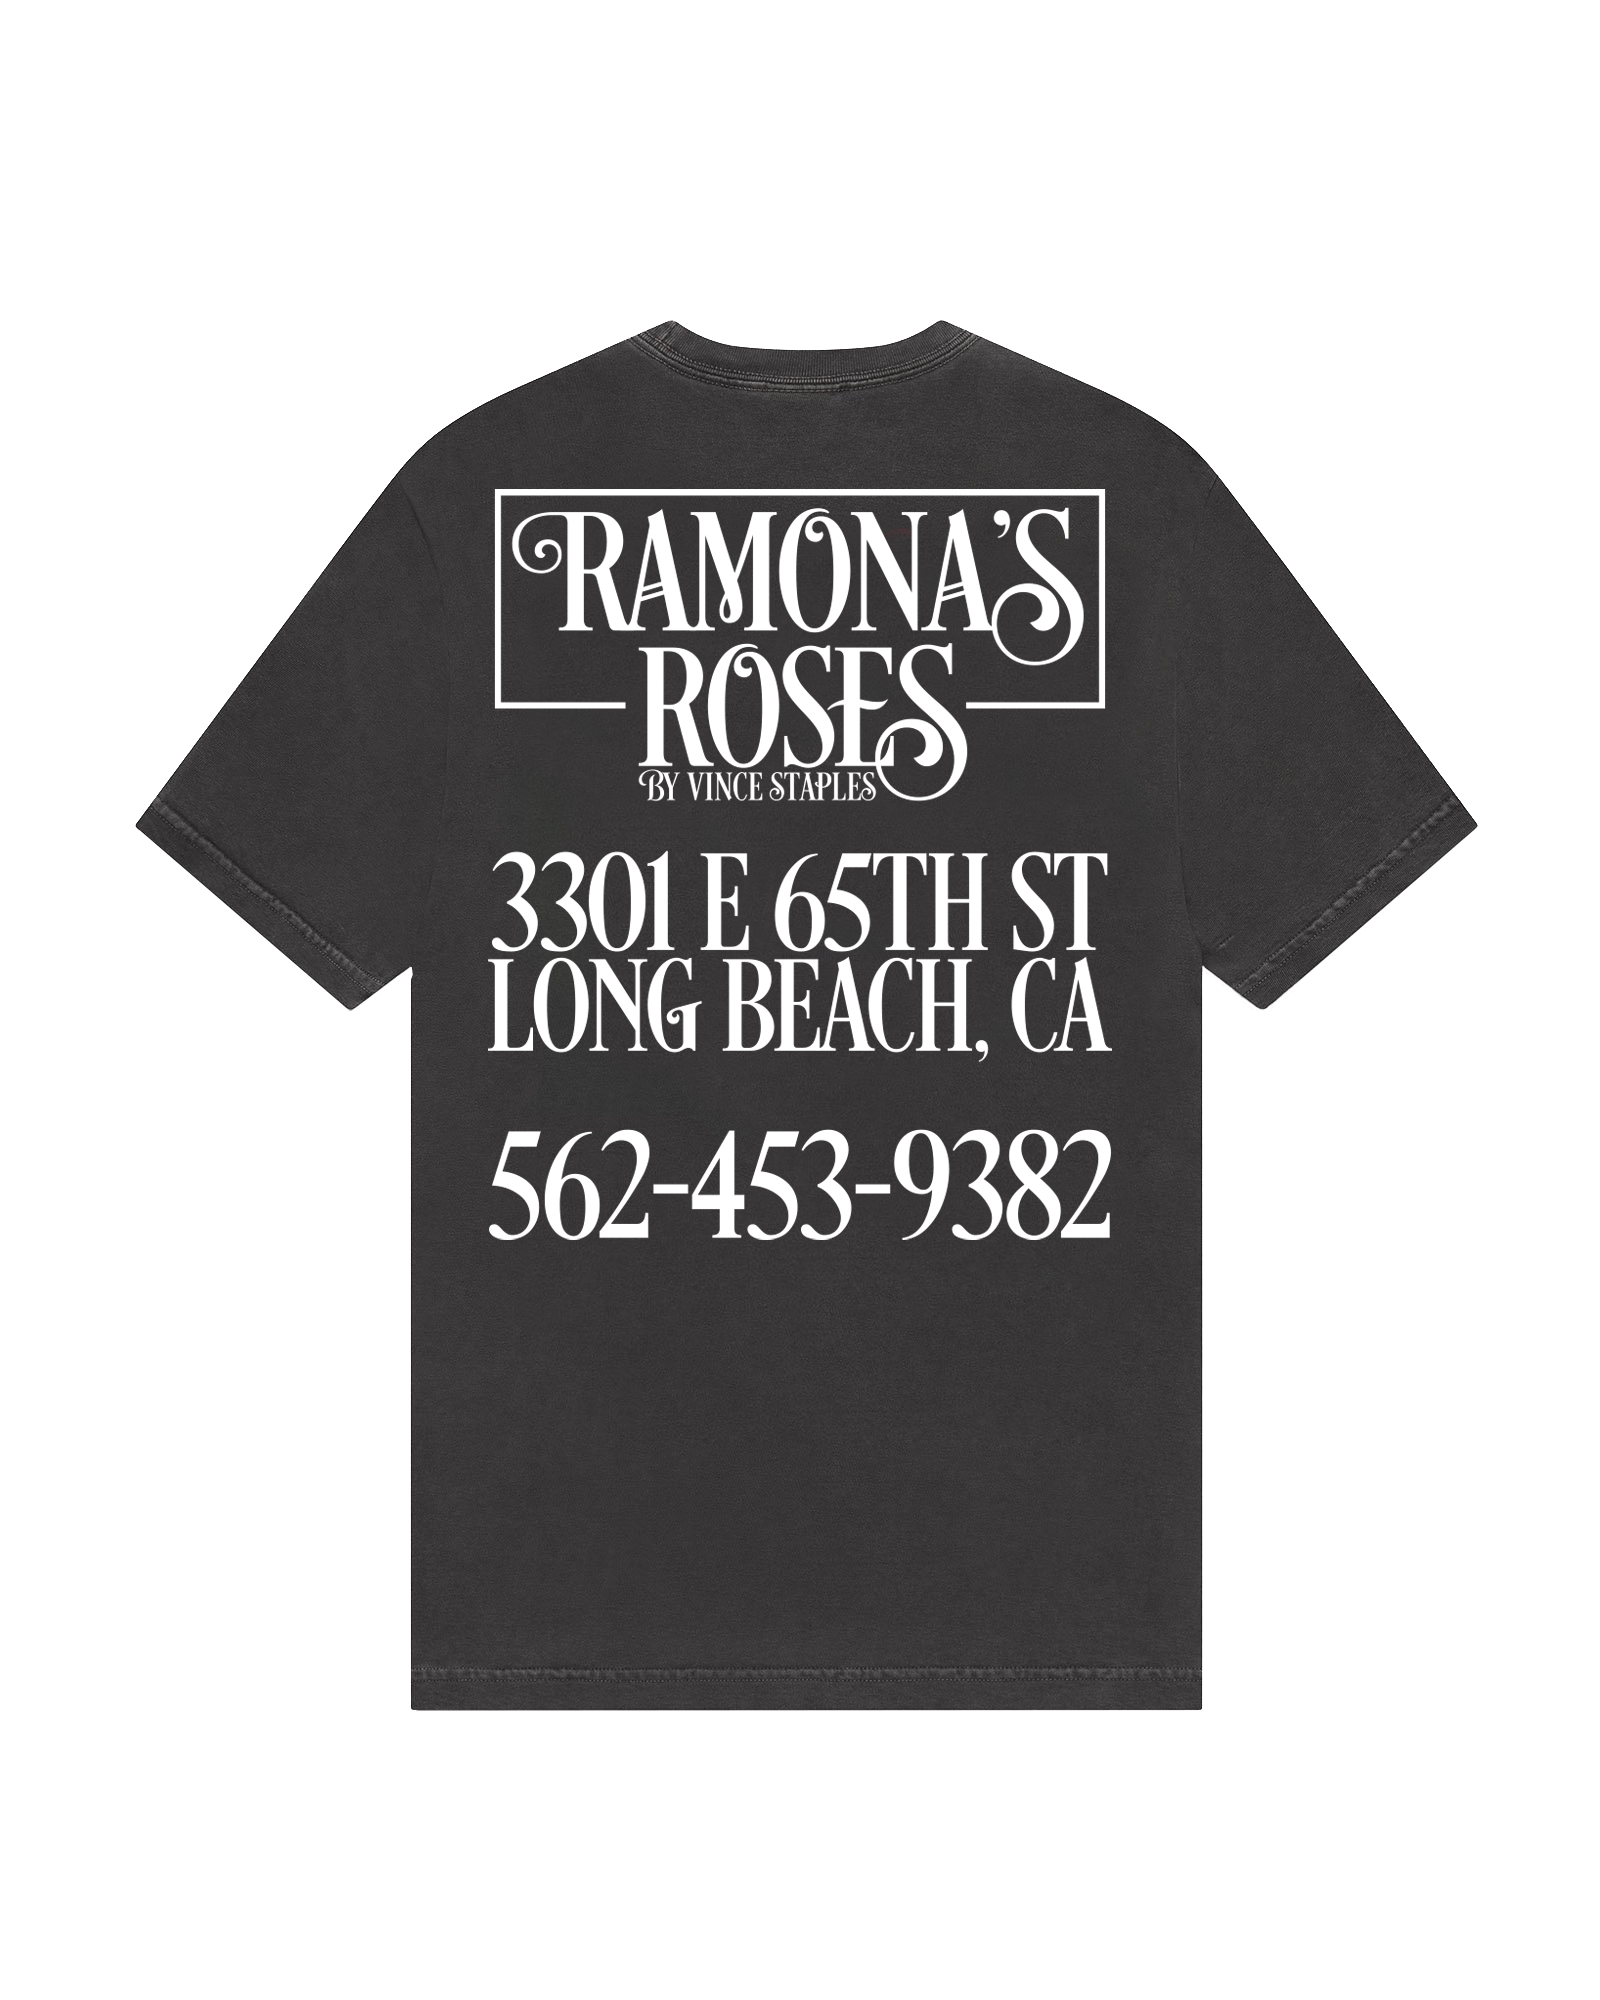 Romona's Roses Back